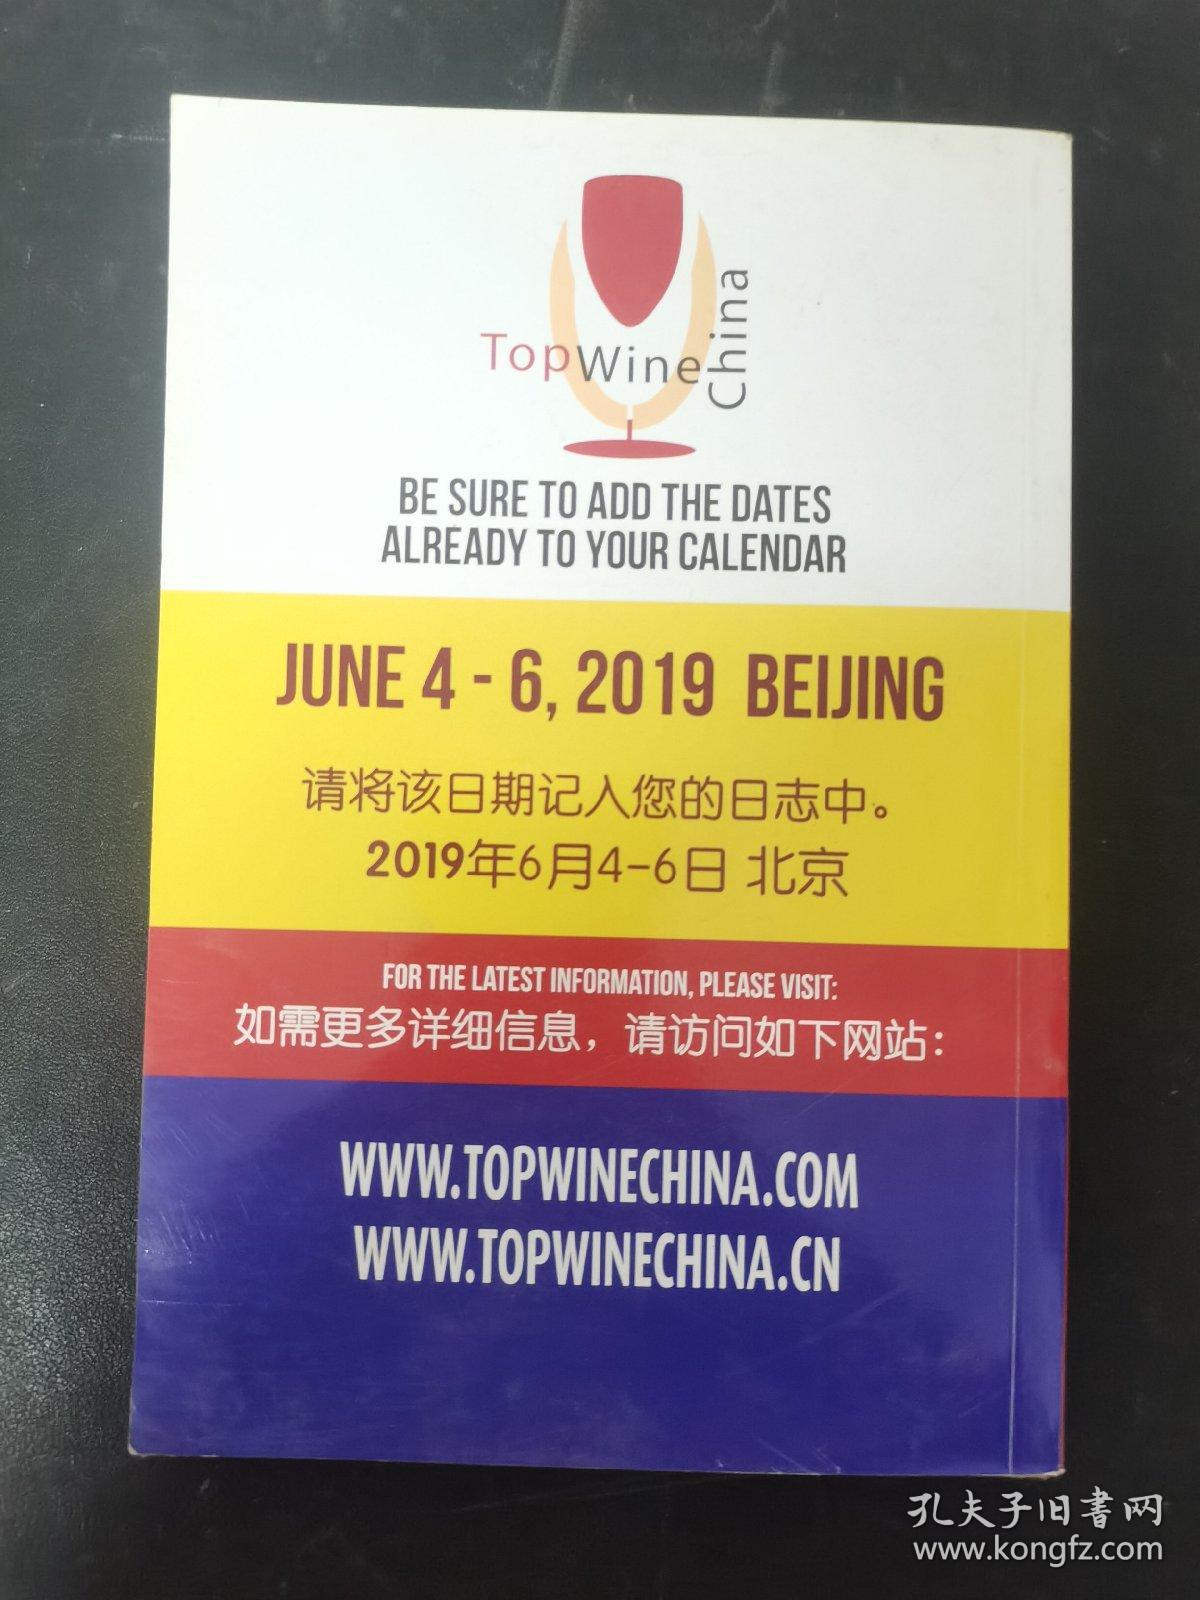 Topwine China2018-Catalogue 展会会刊 2018年5月21-23日 北京 杂志